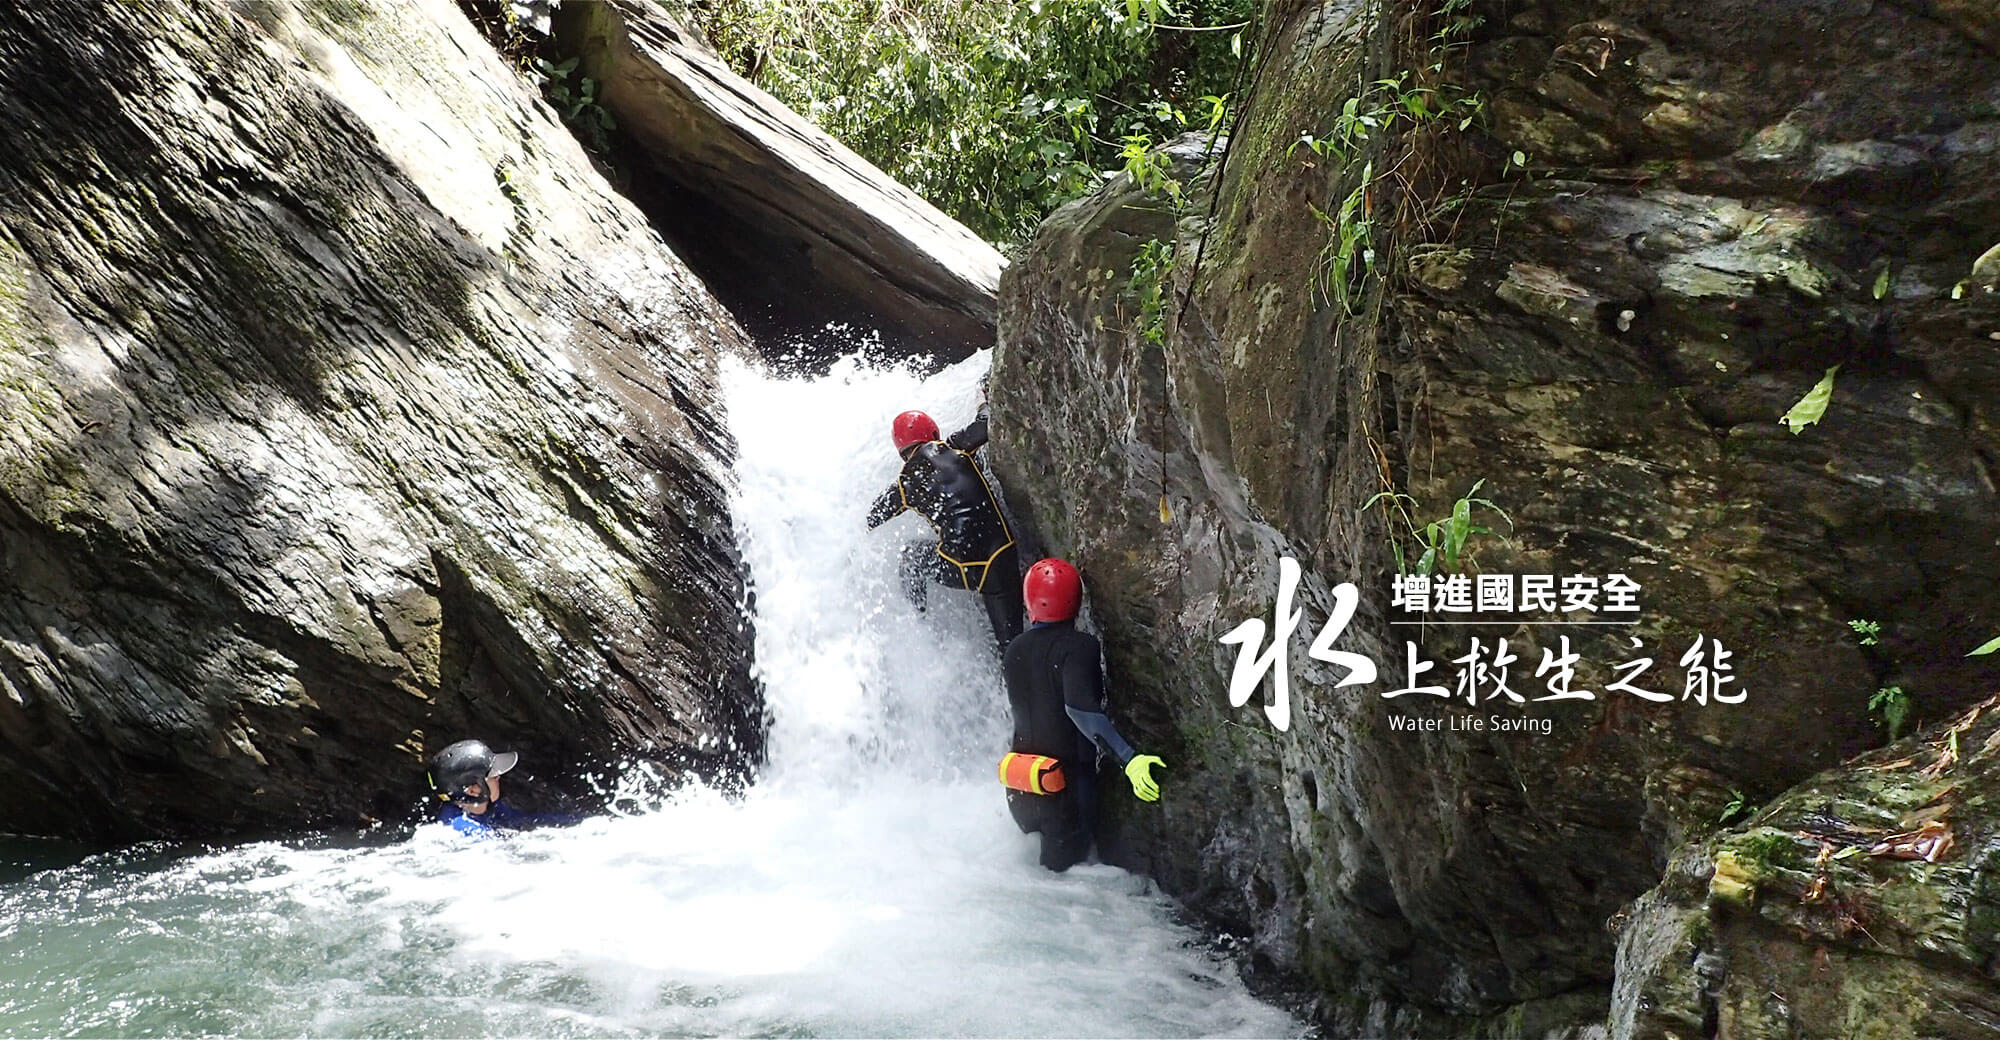 中華民國水上救生協會台南市分會形象廣告2